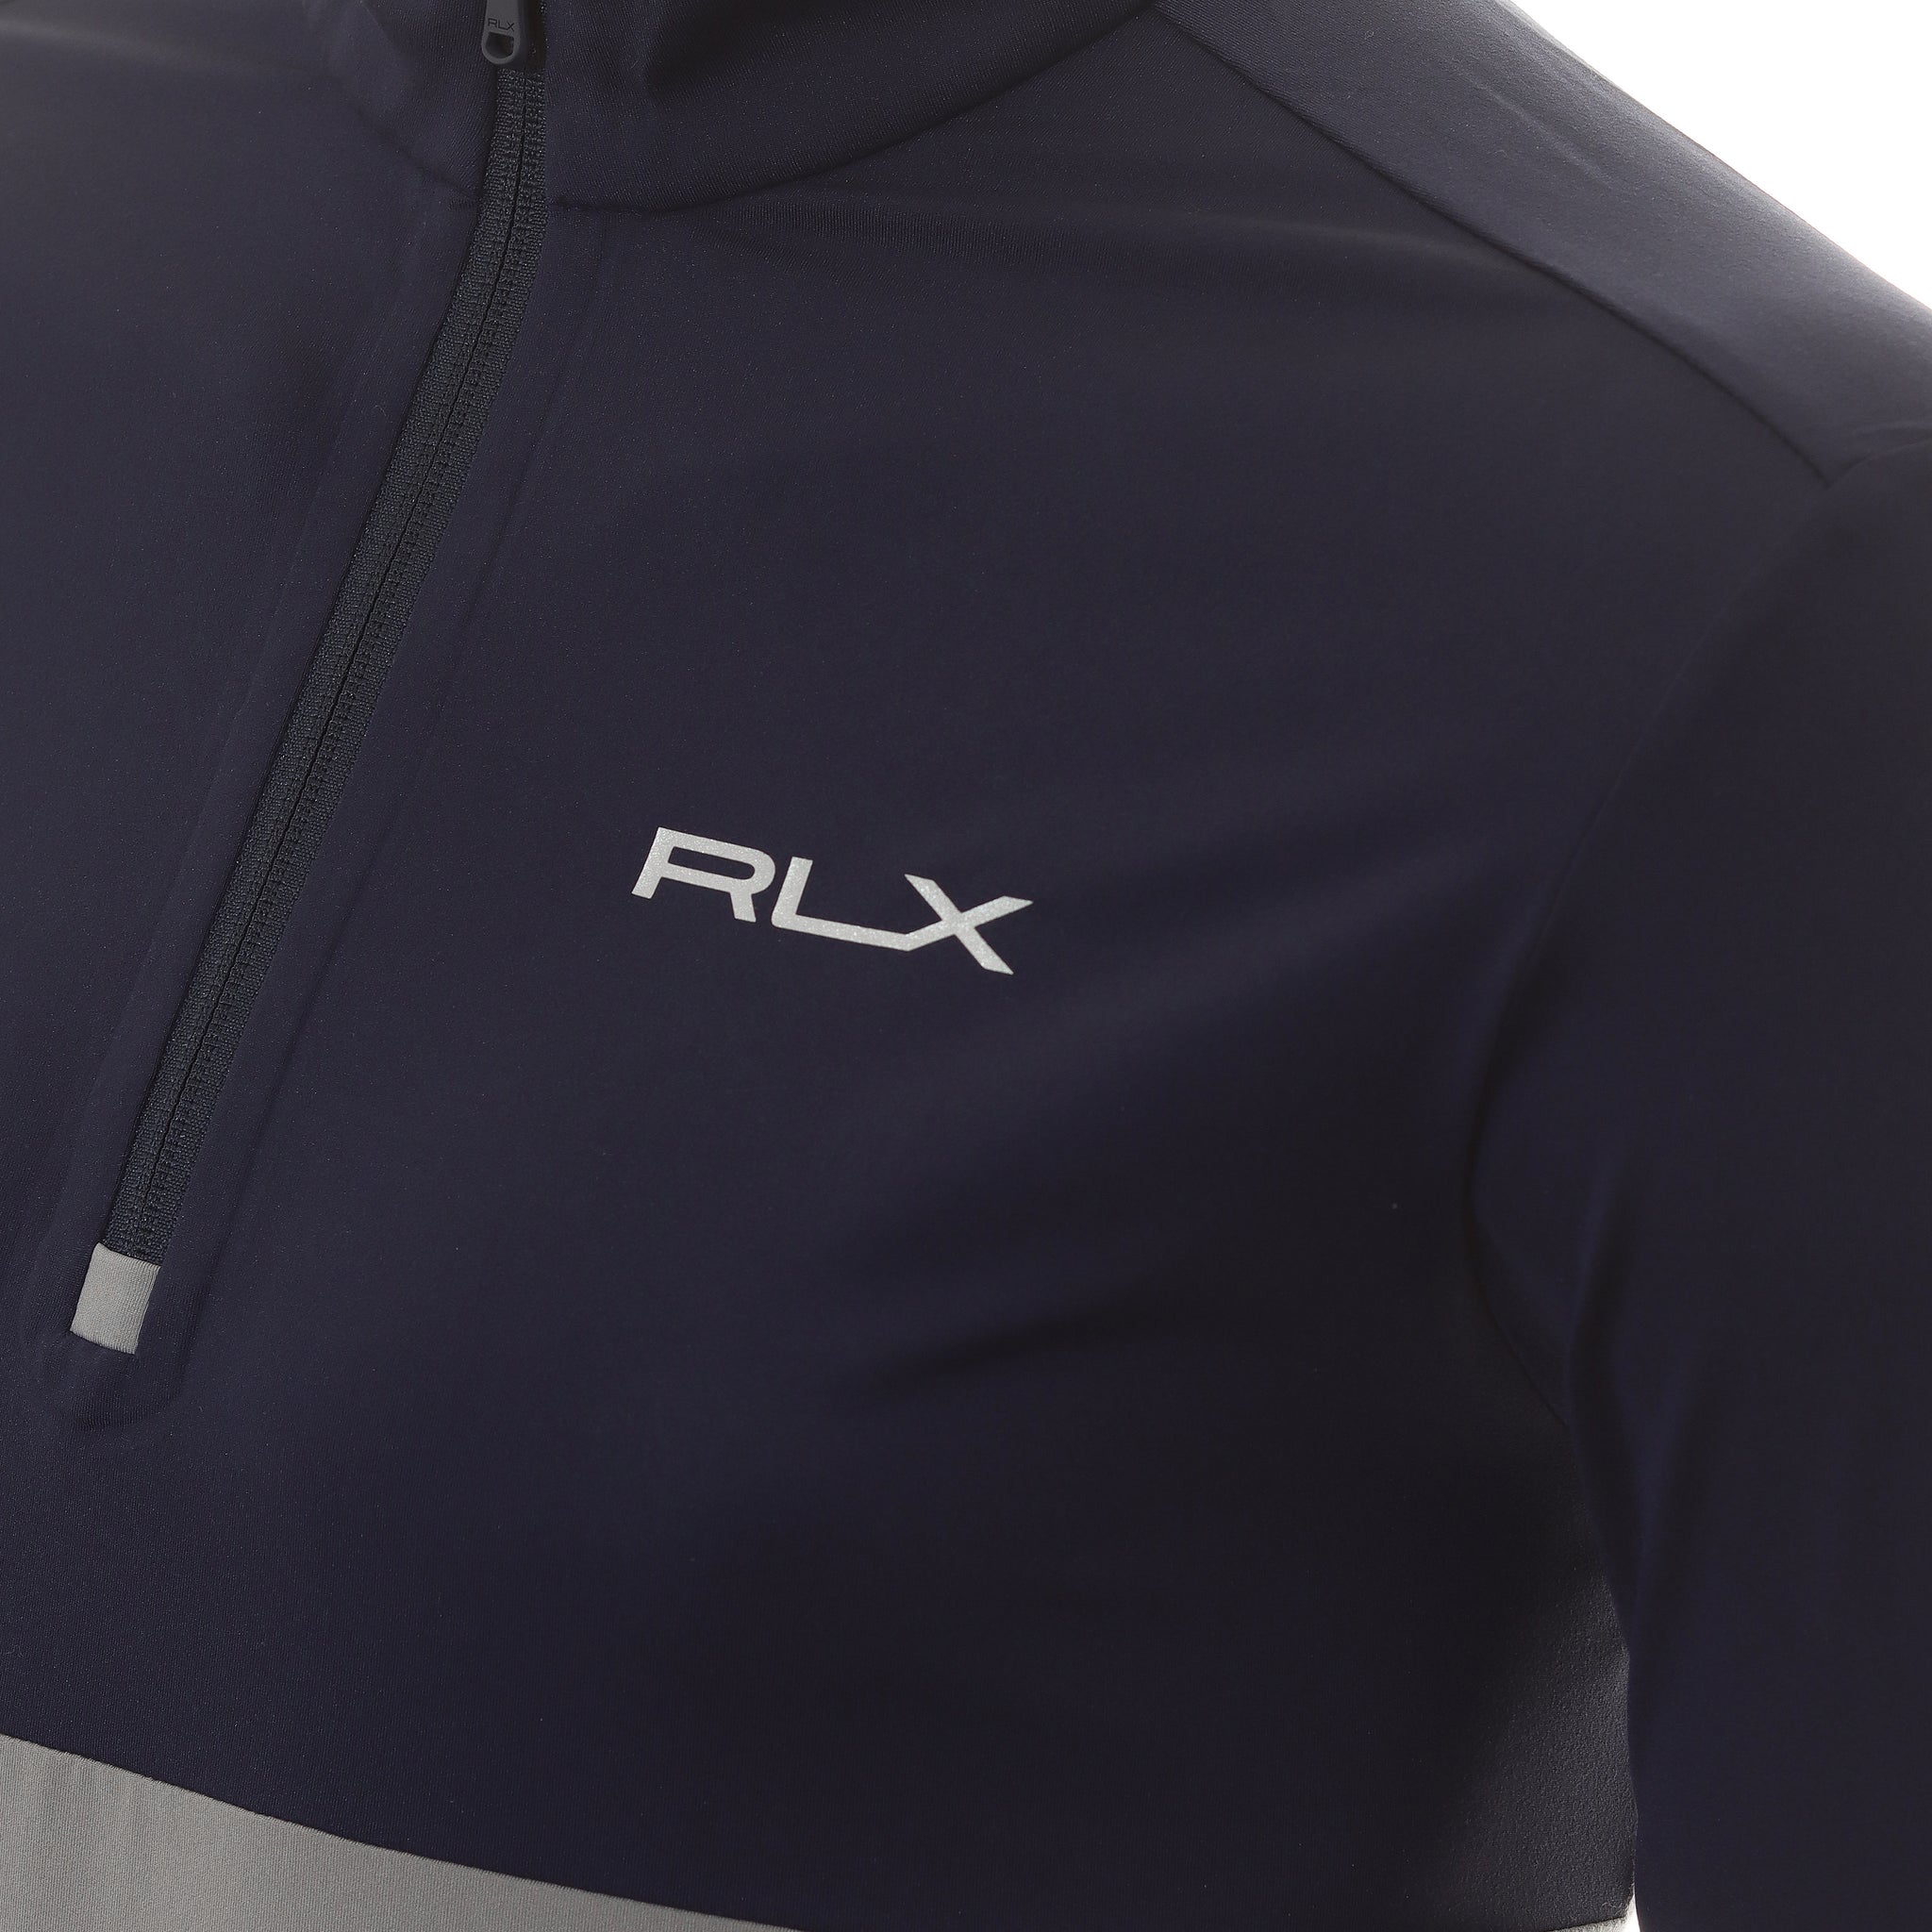 RLX Ralph Lauren Peached Midlayer Half Zip 785915600 Peak Grey Refined ...